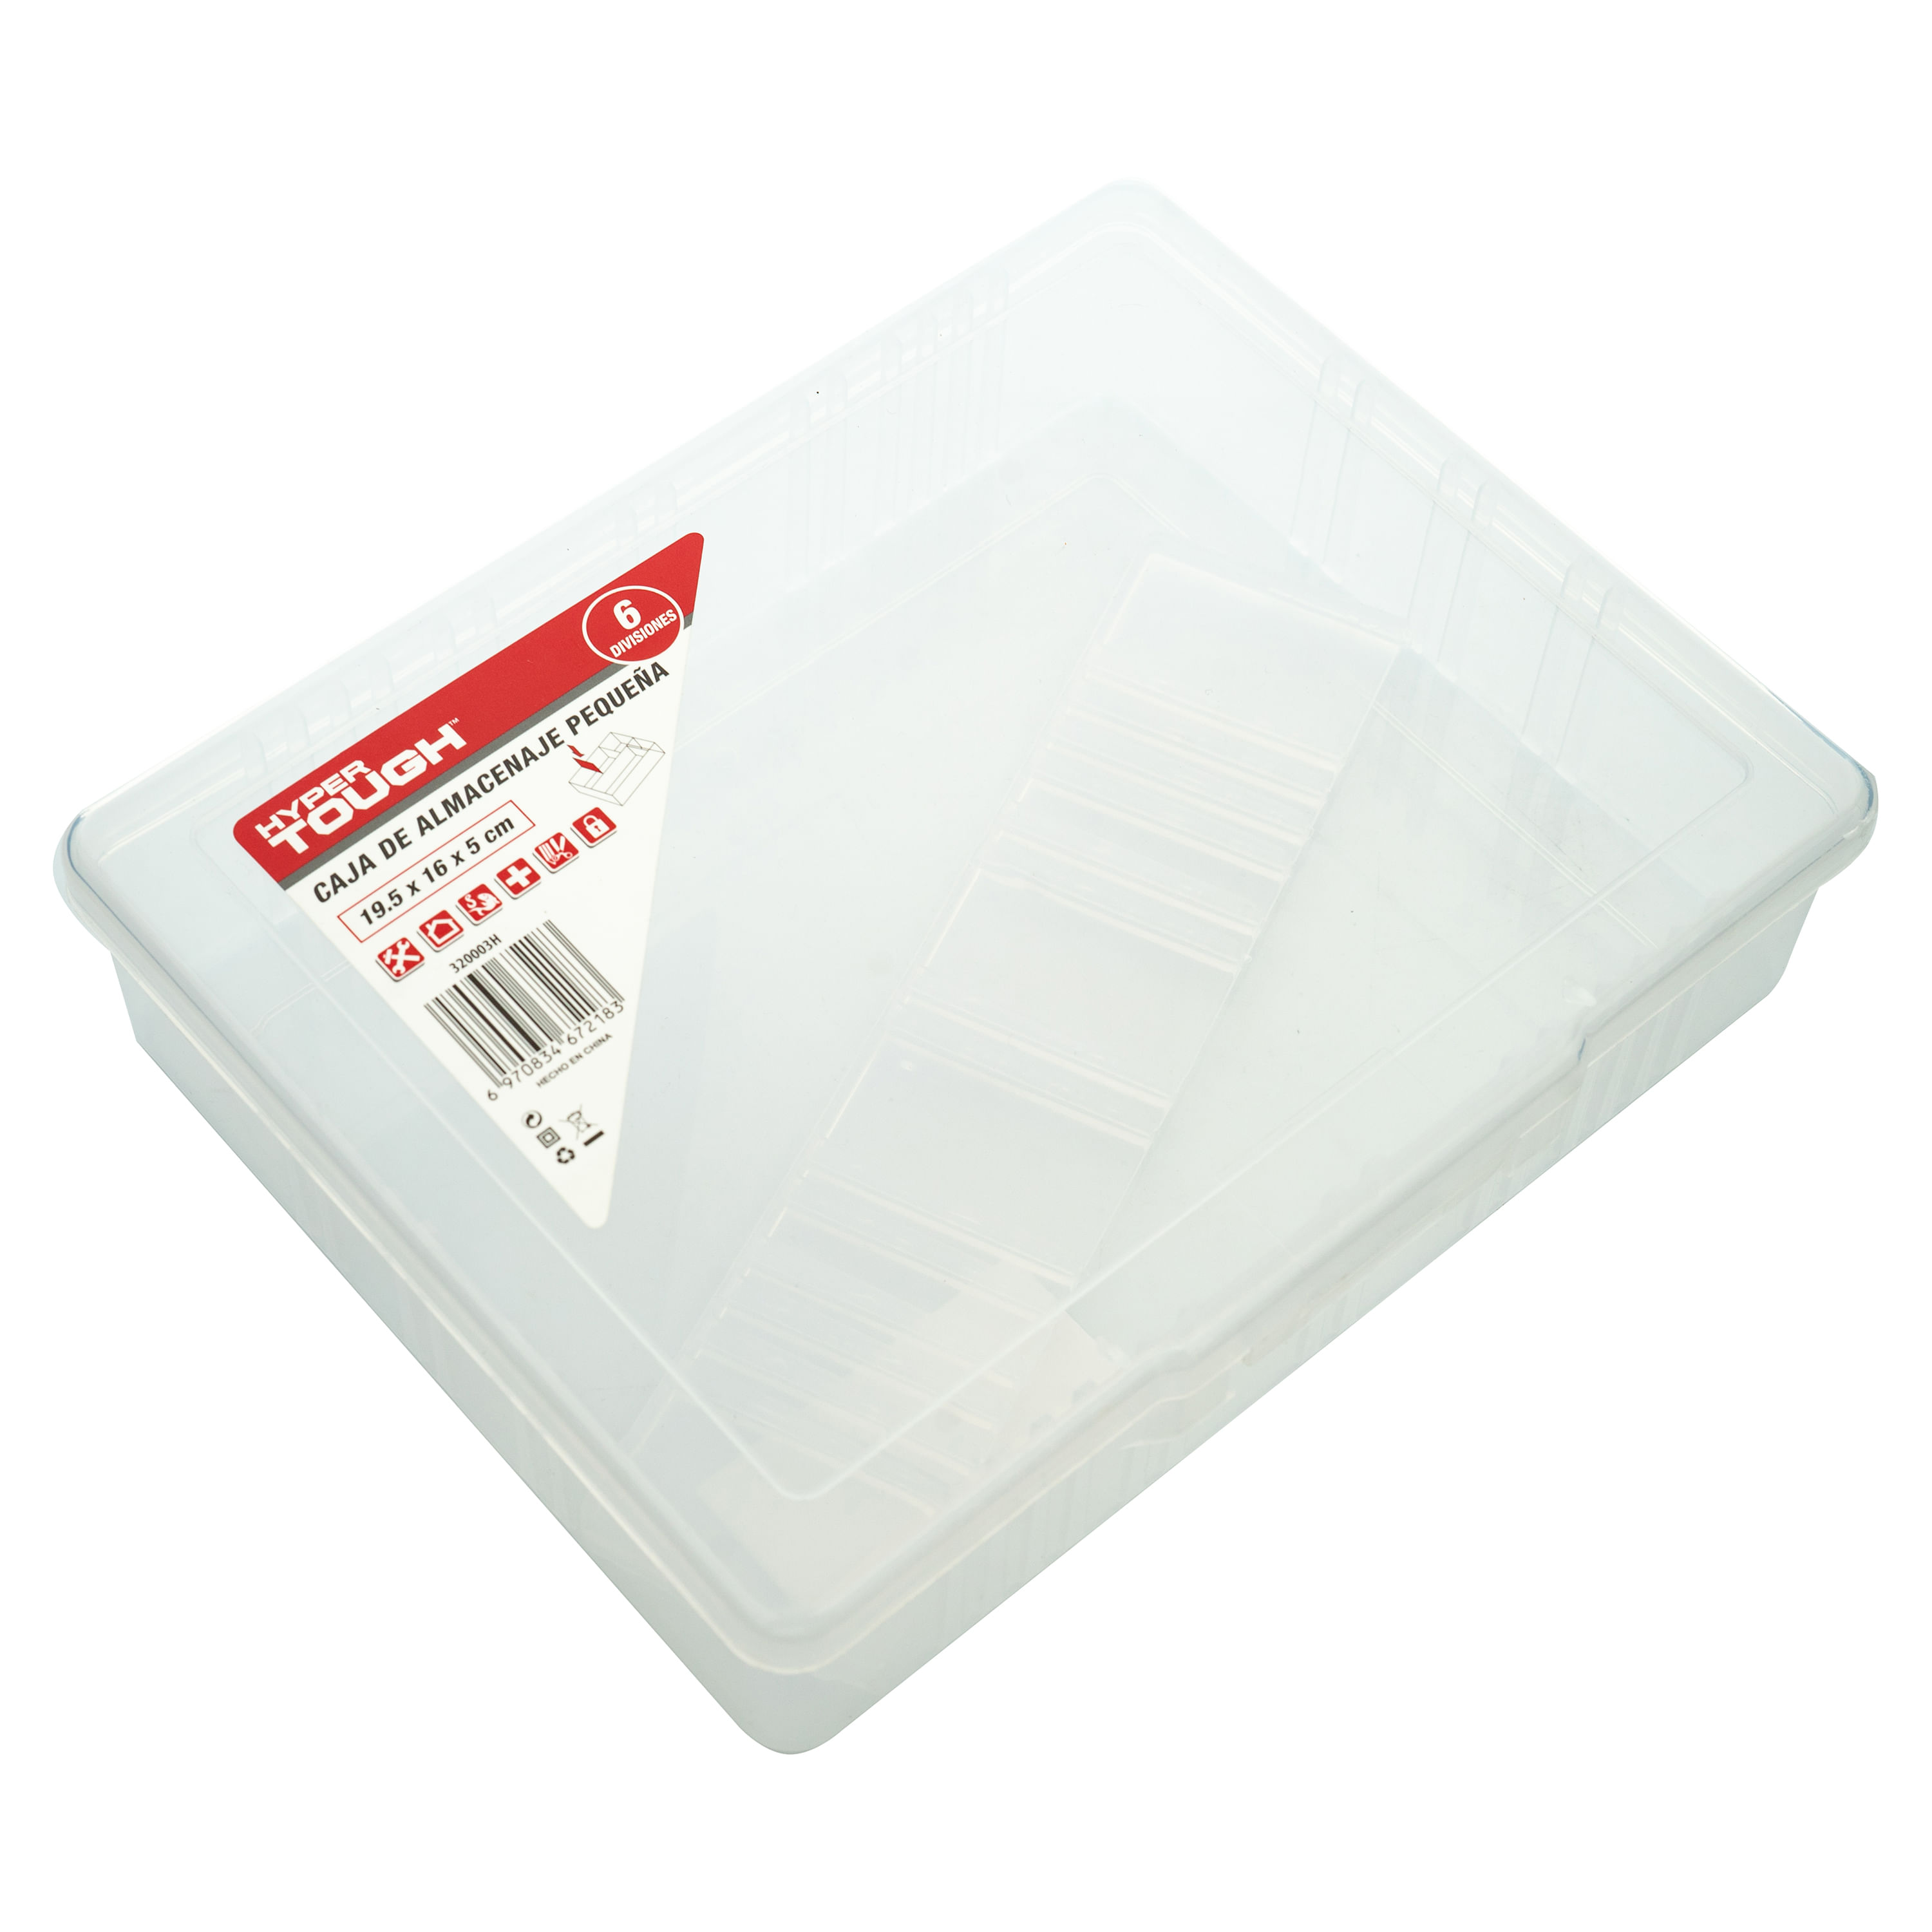 Smartbox Pro - Juego de cajas archivadoras (20 unidades), color blanco